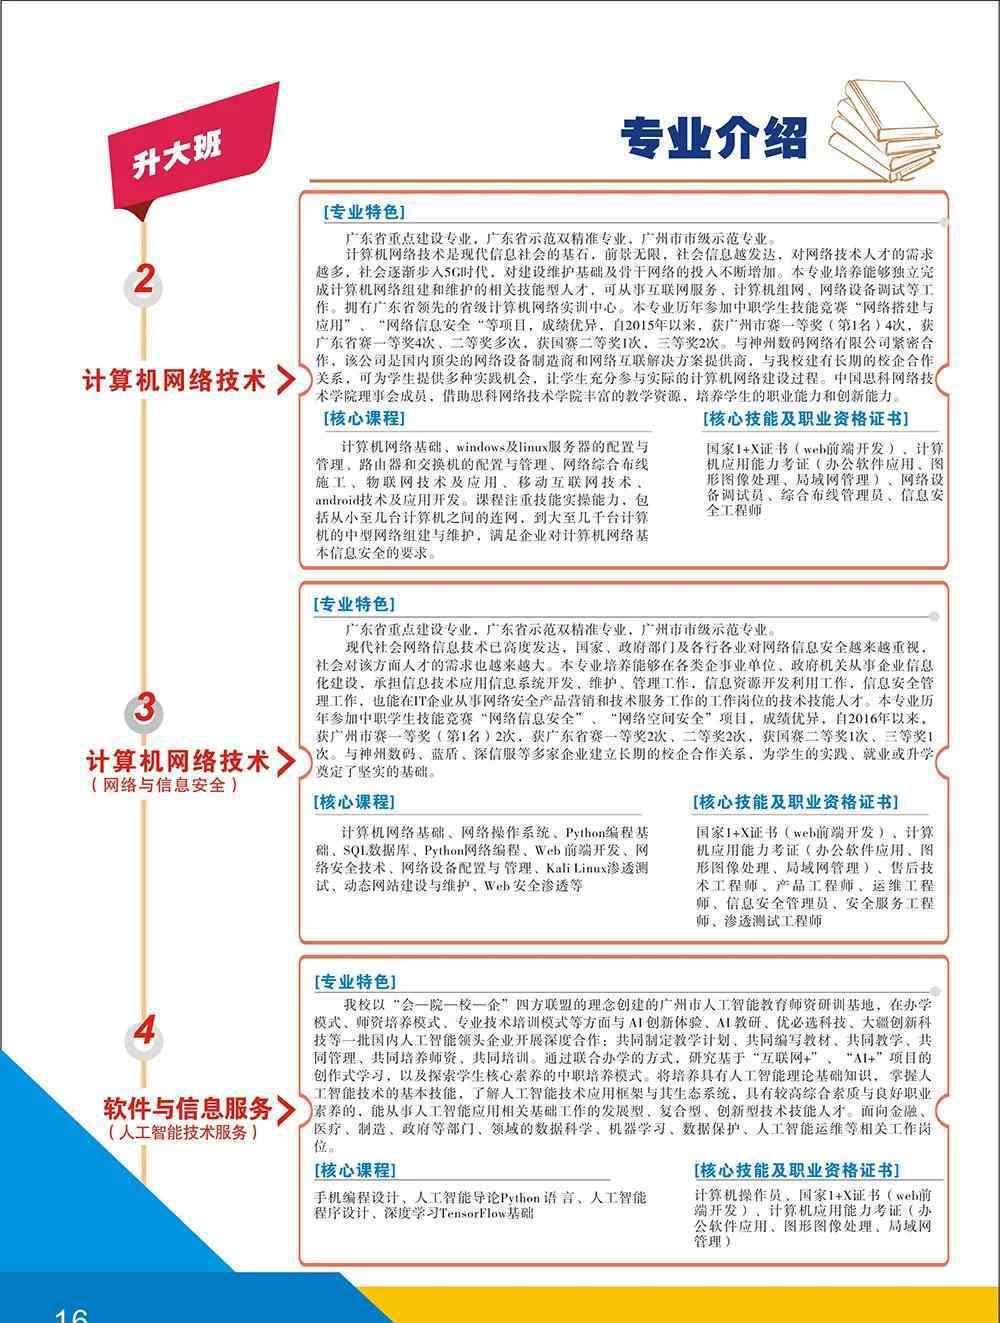 广州信息工程职业学校 广州市信息工程职业学校2020年招生简章